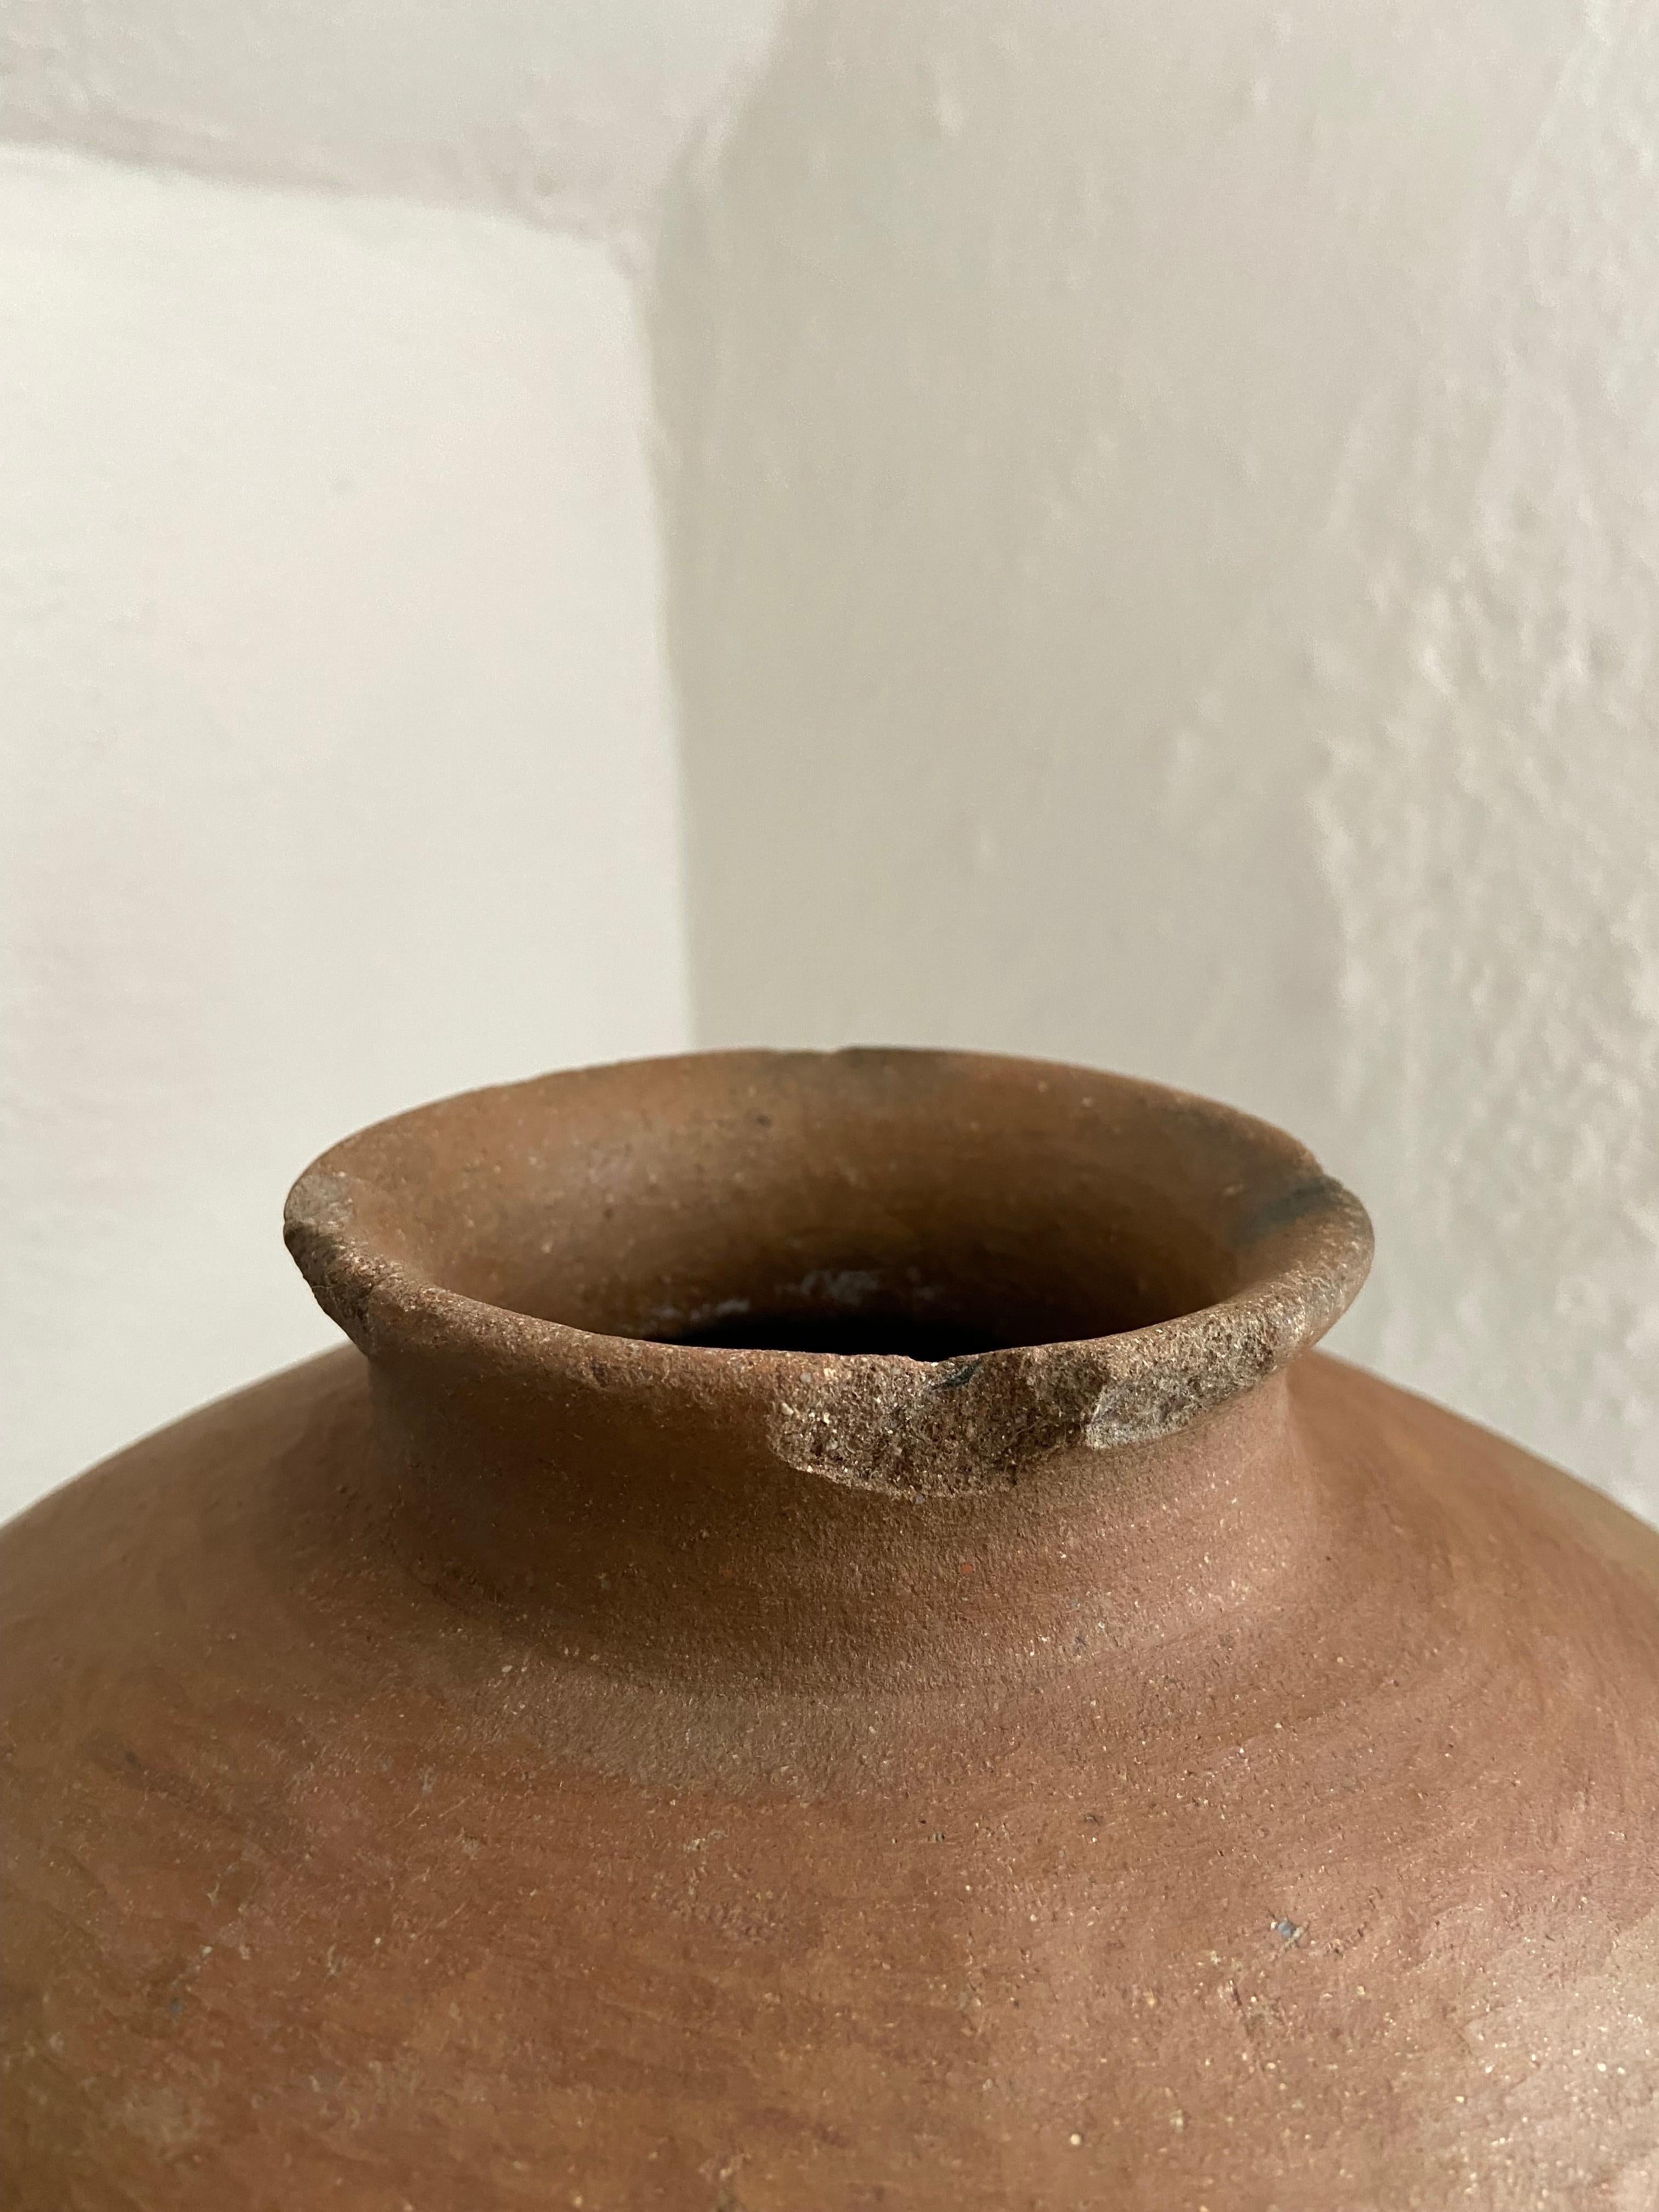 Country Terracotta Pot From The Mixteca Region Of Oaxaca, Mexico, Circa 1940's